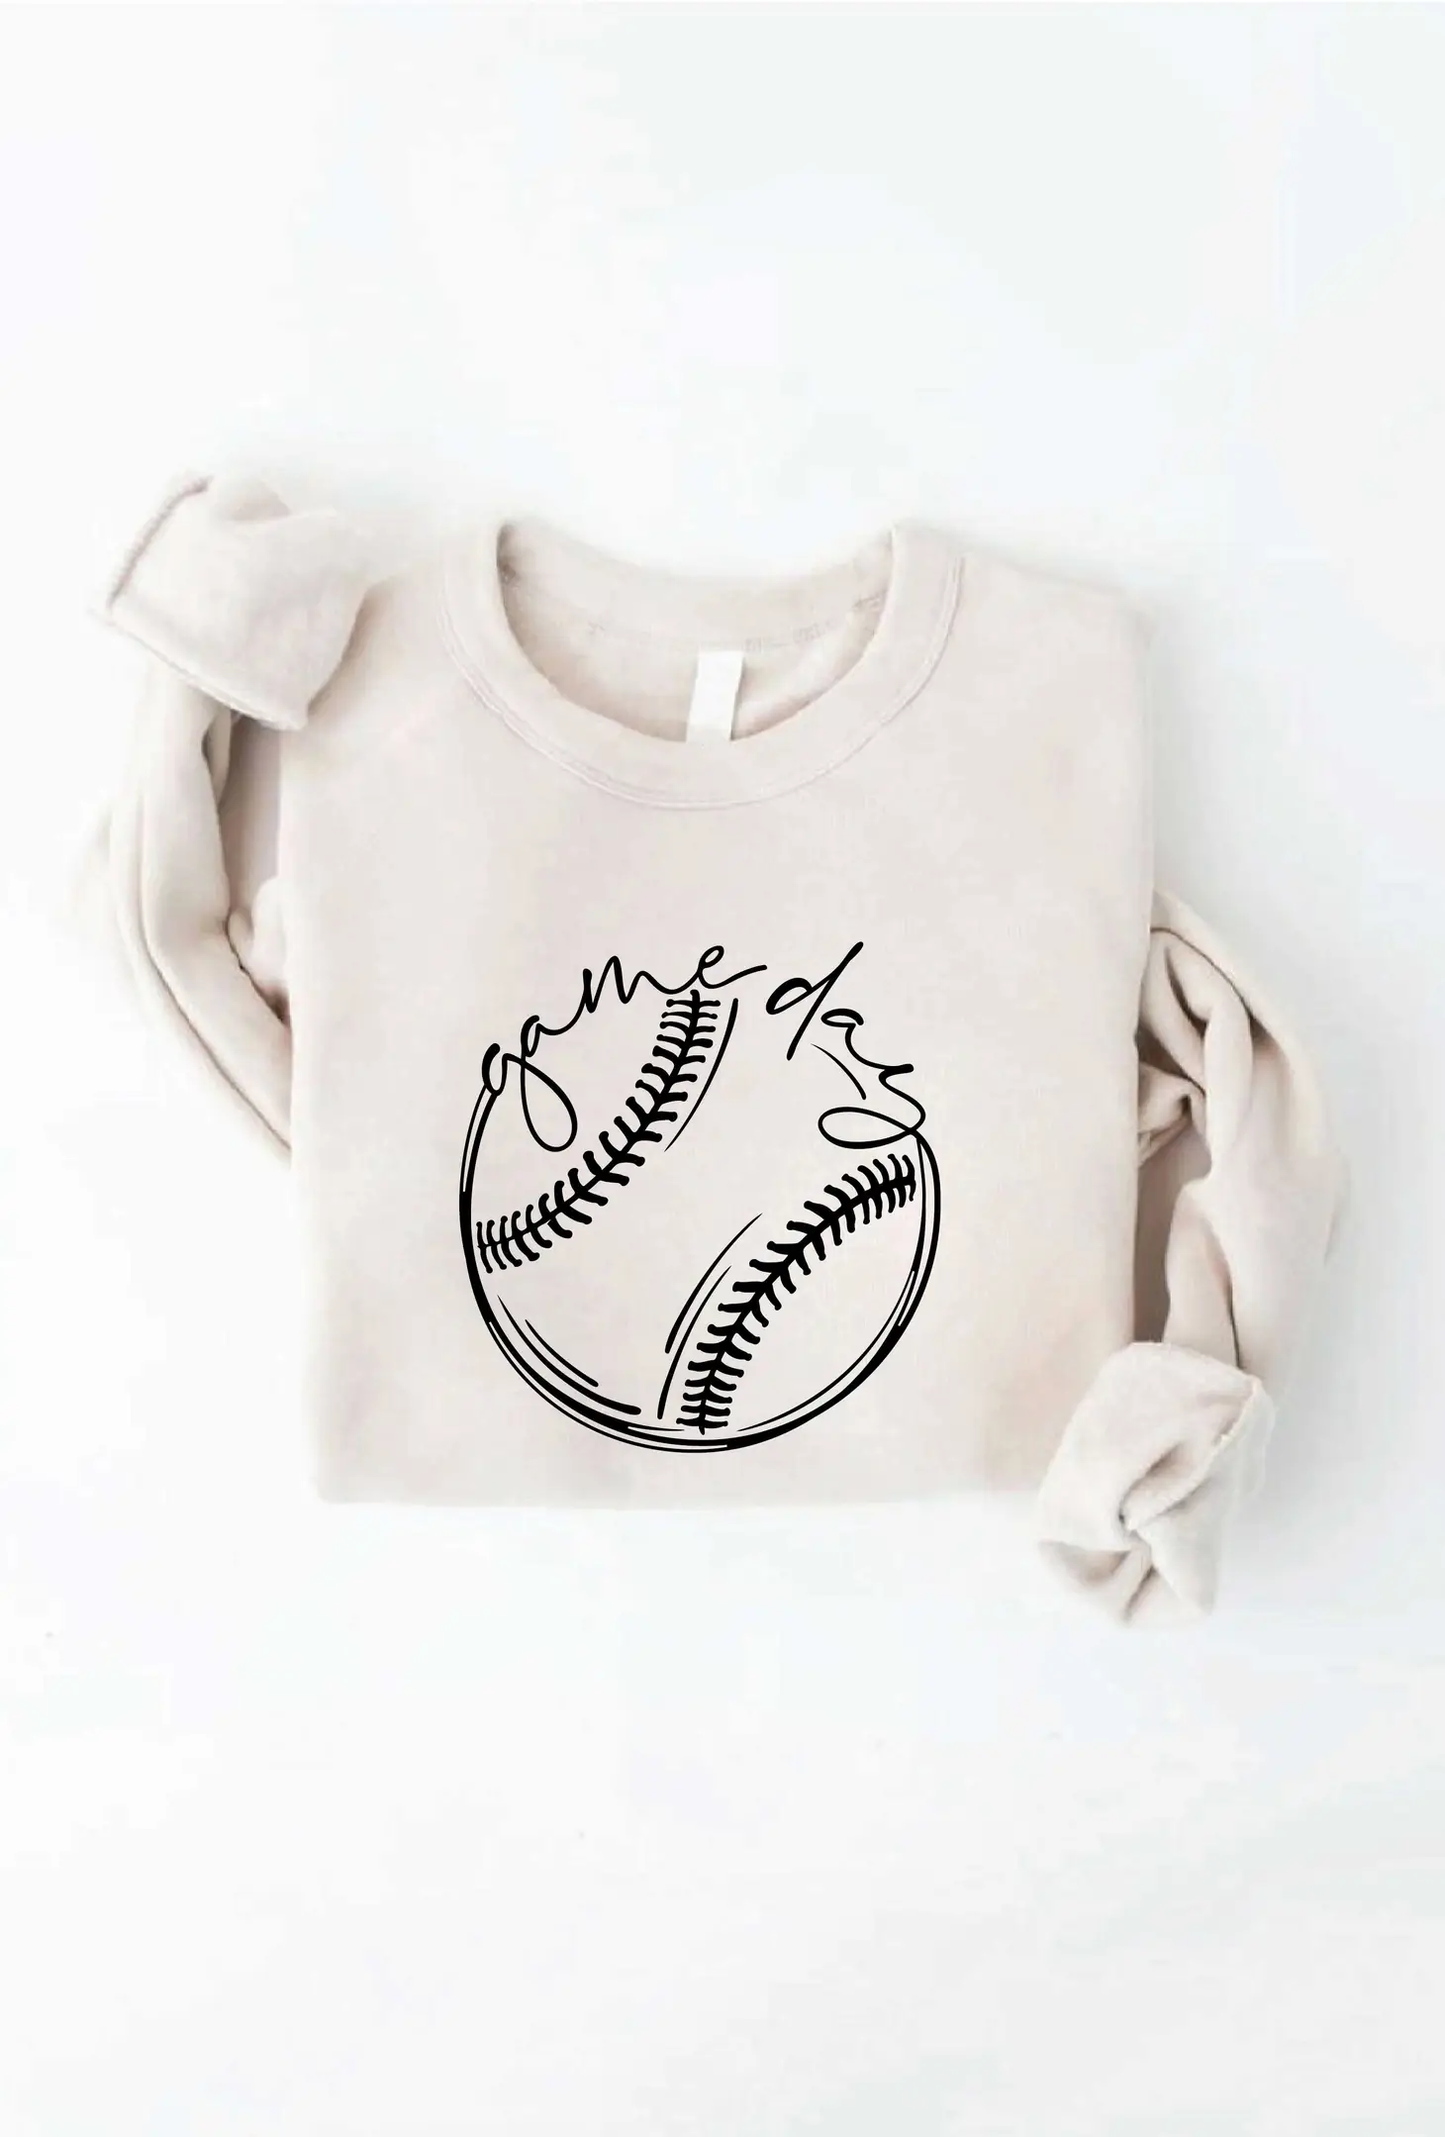 BASEBALL/SOFTBALL GAME DAY - Graphic Sweatshirt - Heather Dust